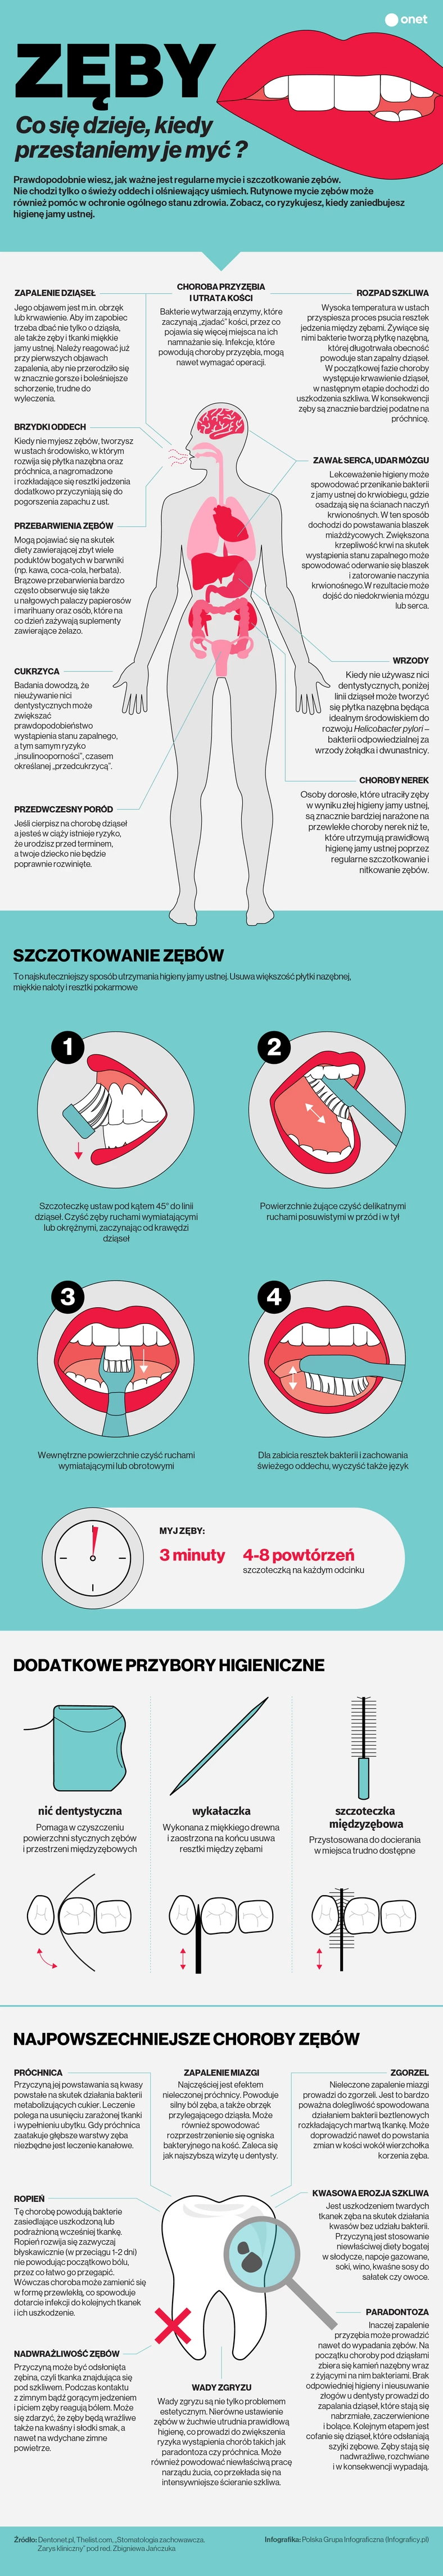 Co się dzieje, kiedy nie myjesz zębów